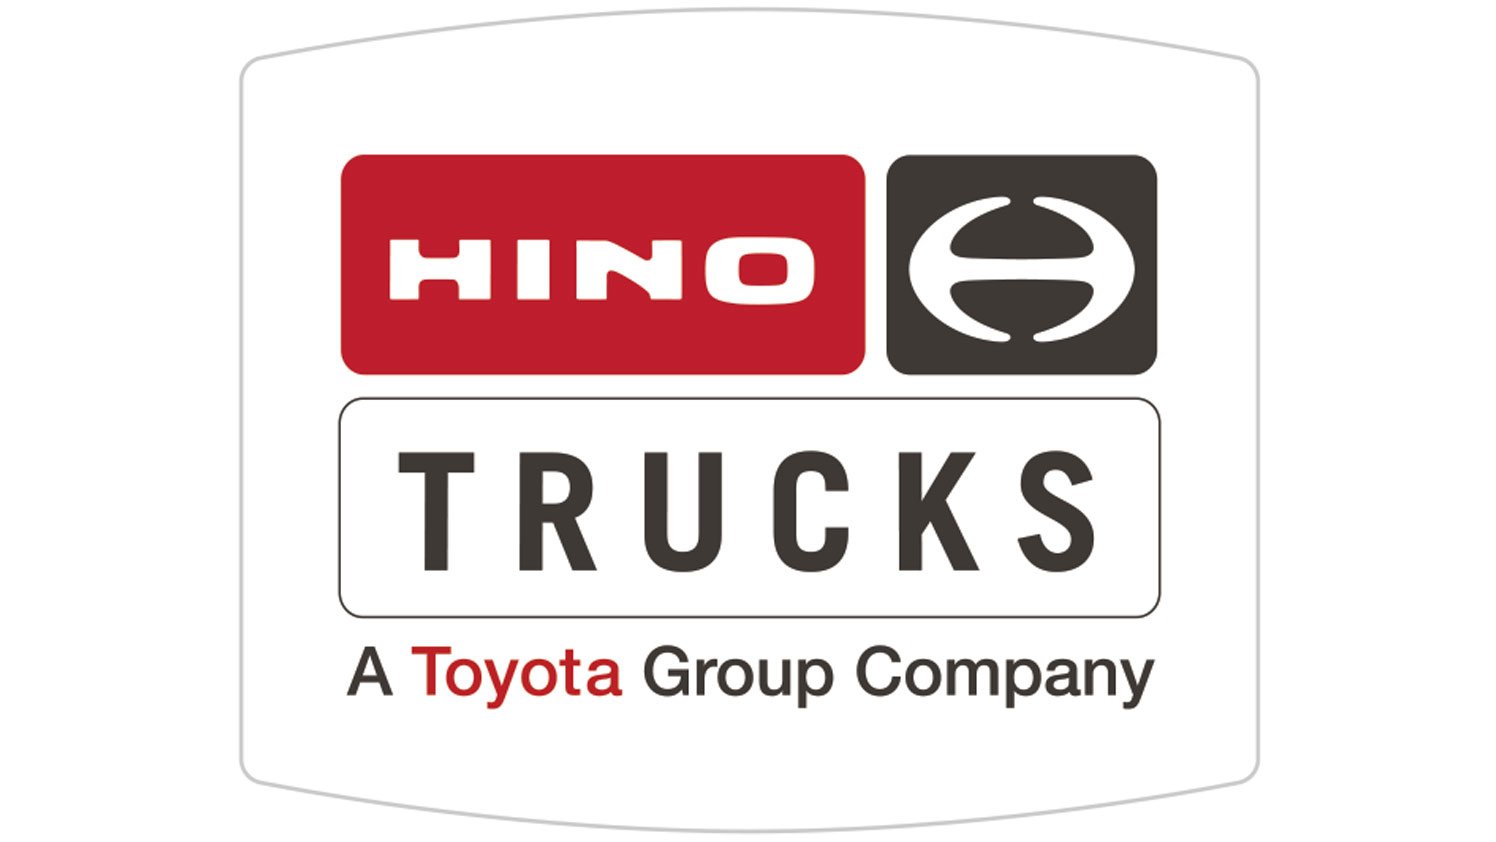 Hino-Trucks-logo-821665872-Geotab-web-@2x